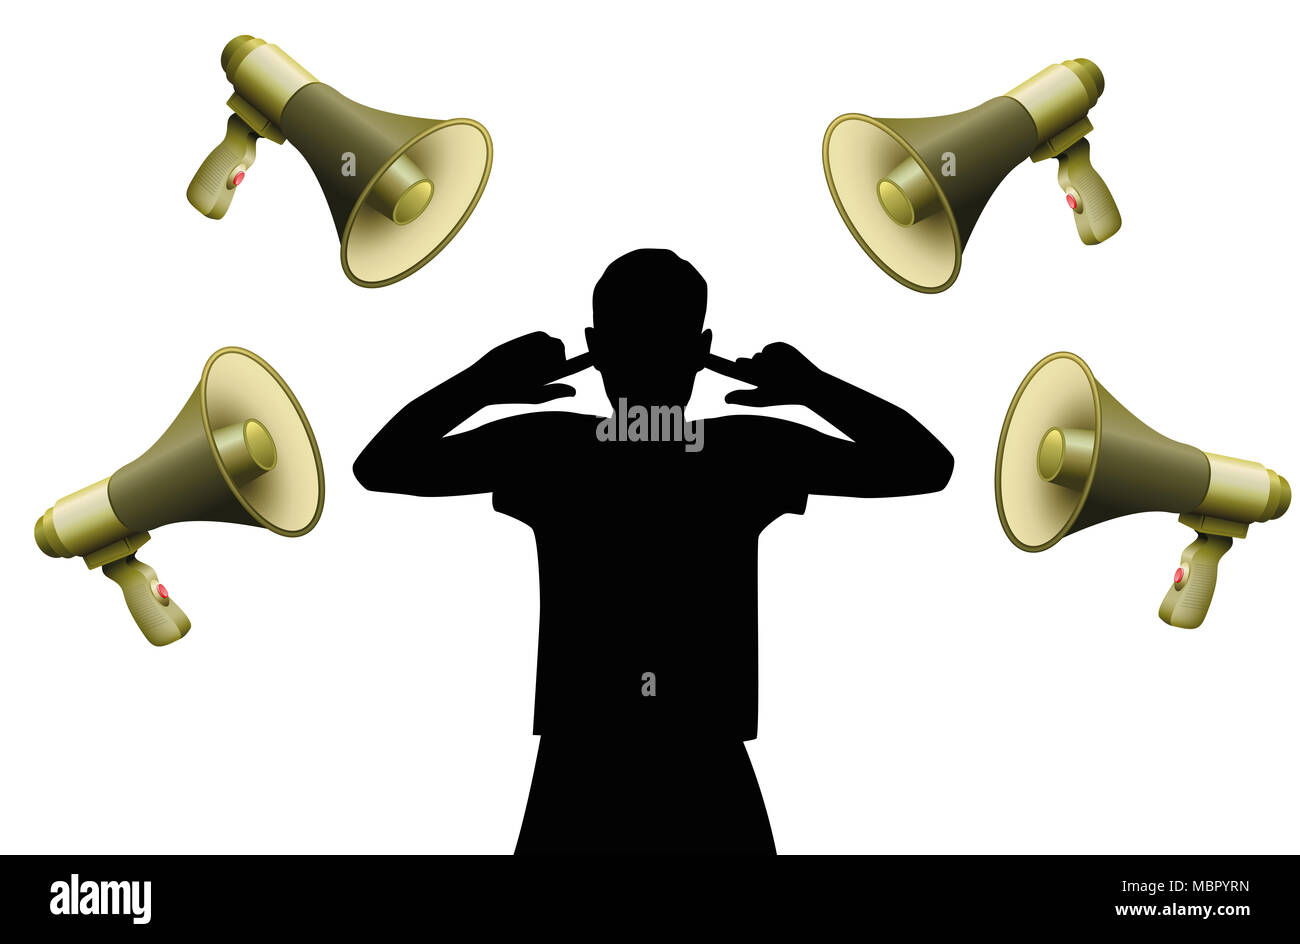 Lärmbelästigung. Symbolisch für Hörschäden, Tinnitus, Hörstörung, psychischen Stress oder Ungehorsam einer Person, die sich weigert, Befehlen zu gehorchen. Stockfoto